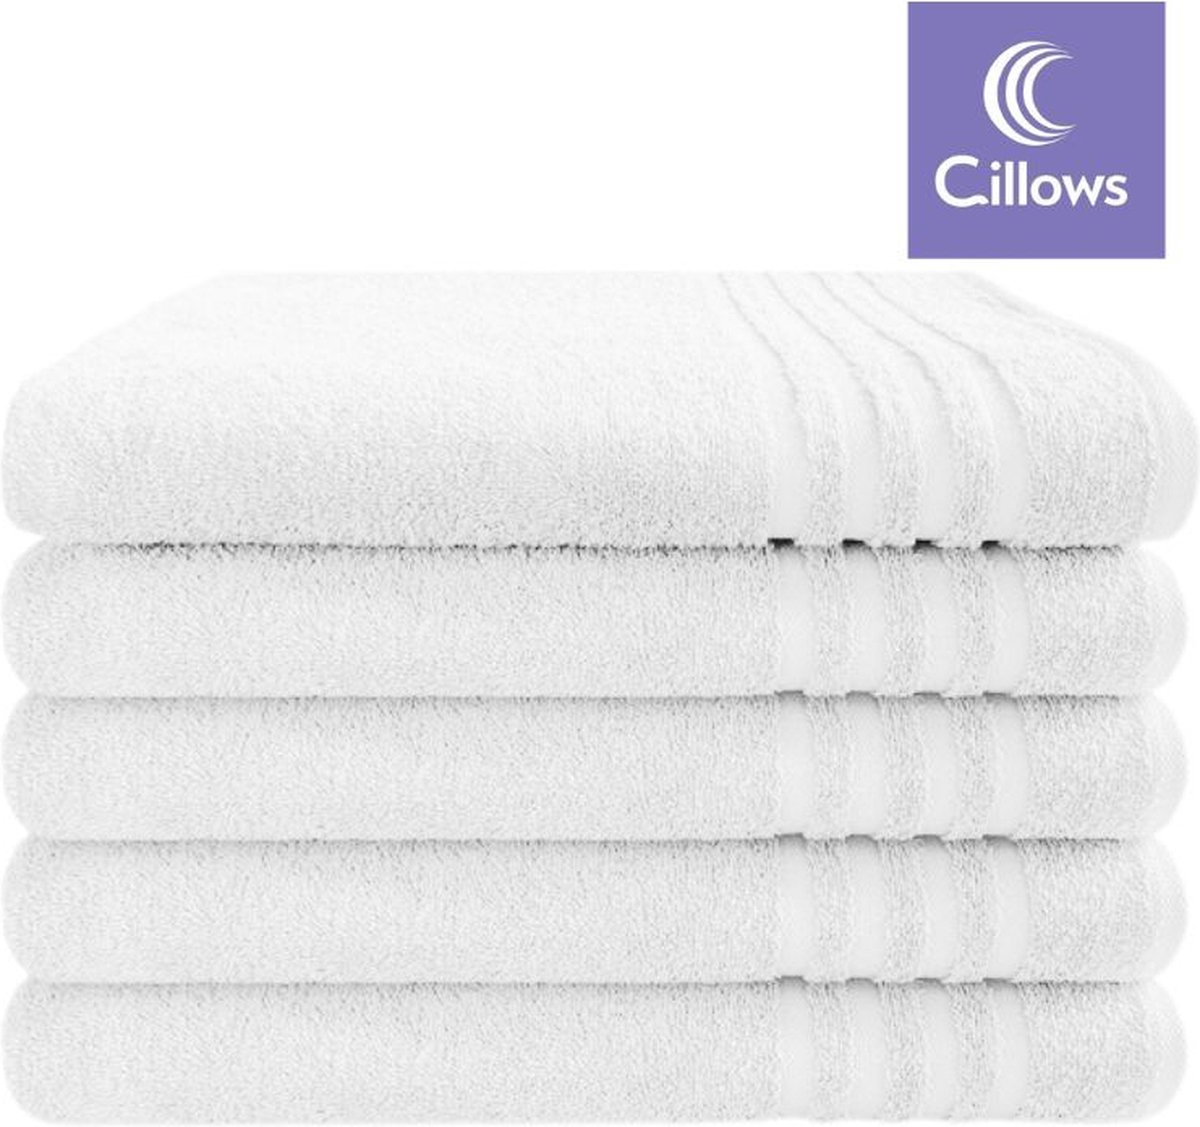 Cillows Handdoek - Hoogwaardige hotelkwaliteit - 50x100 cm - 5 stuks - Wit